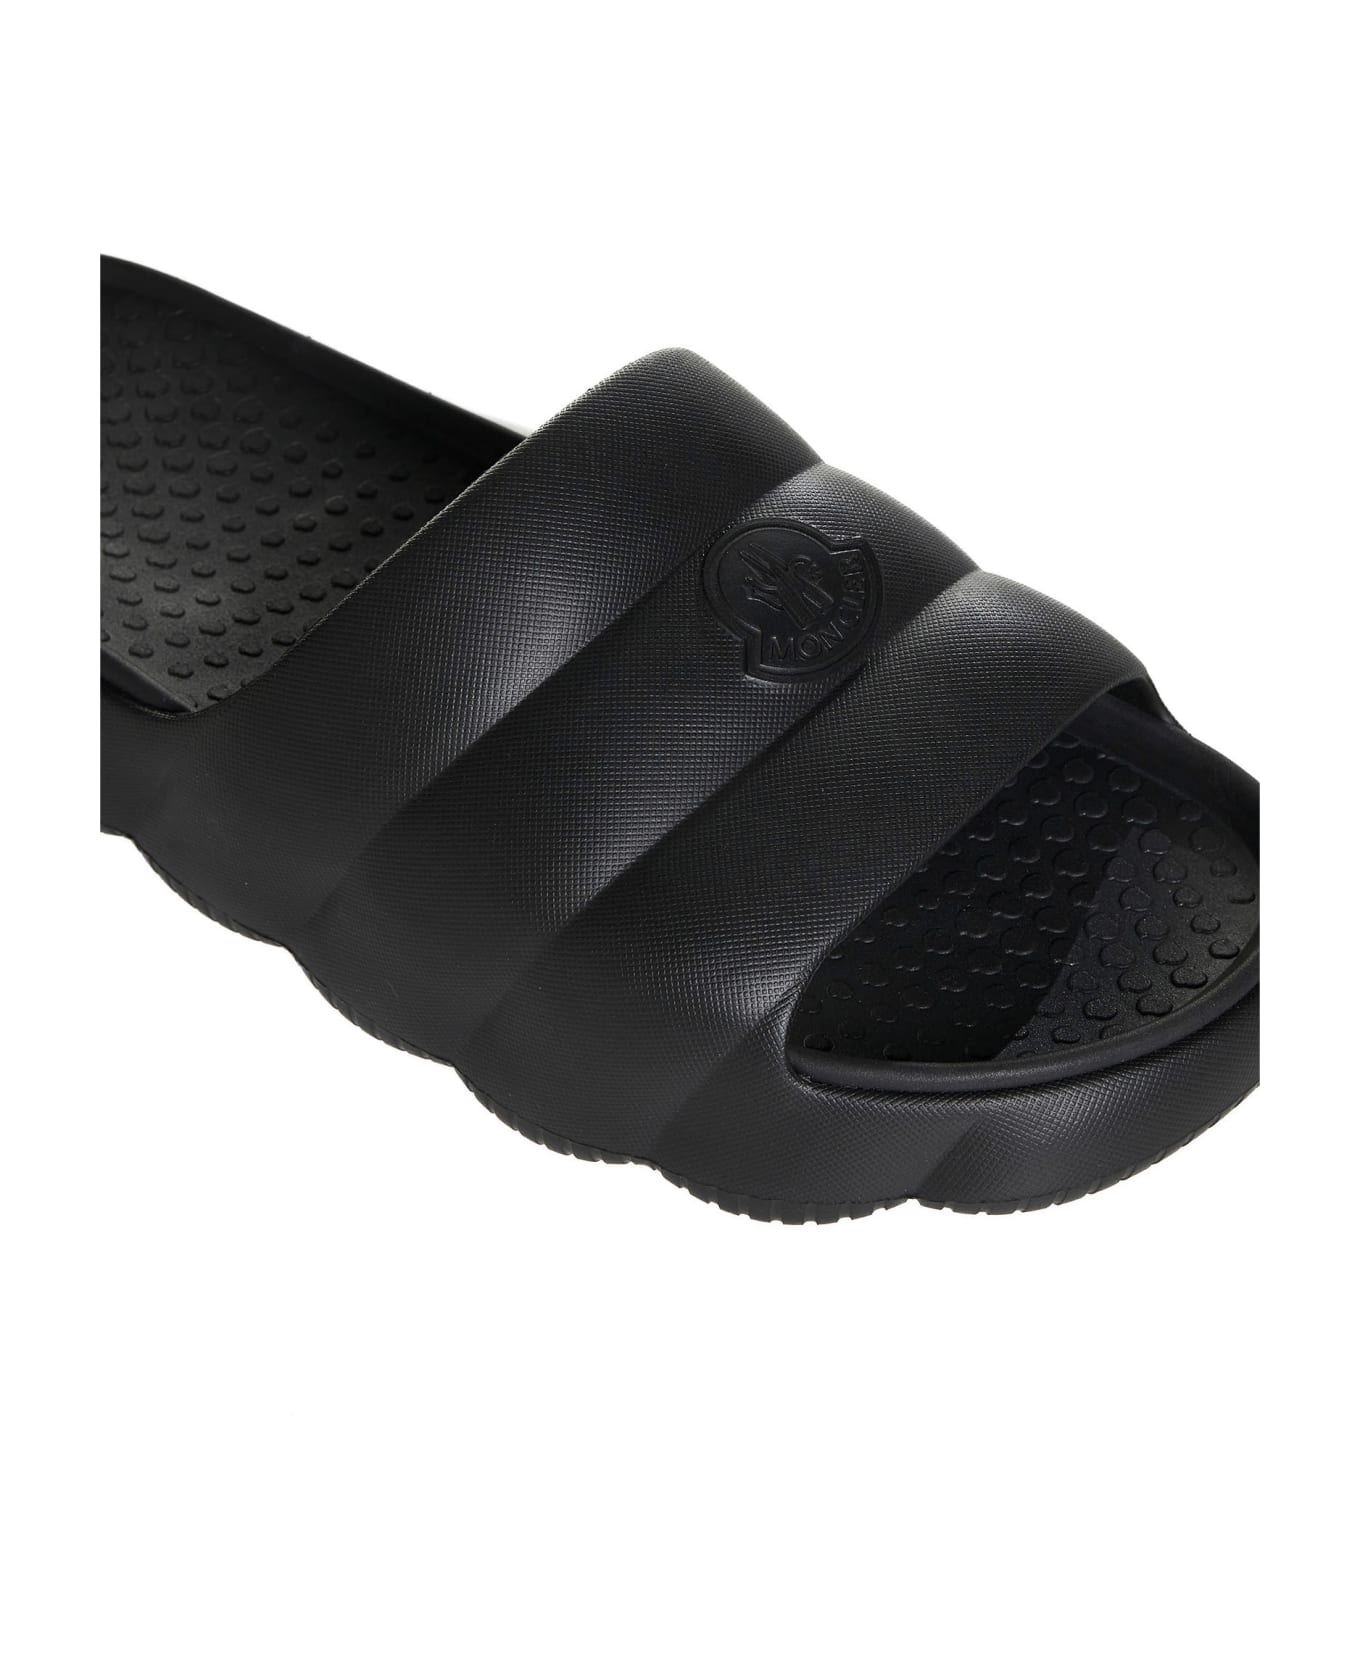 Moncler Shoes - Black